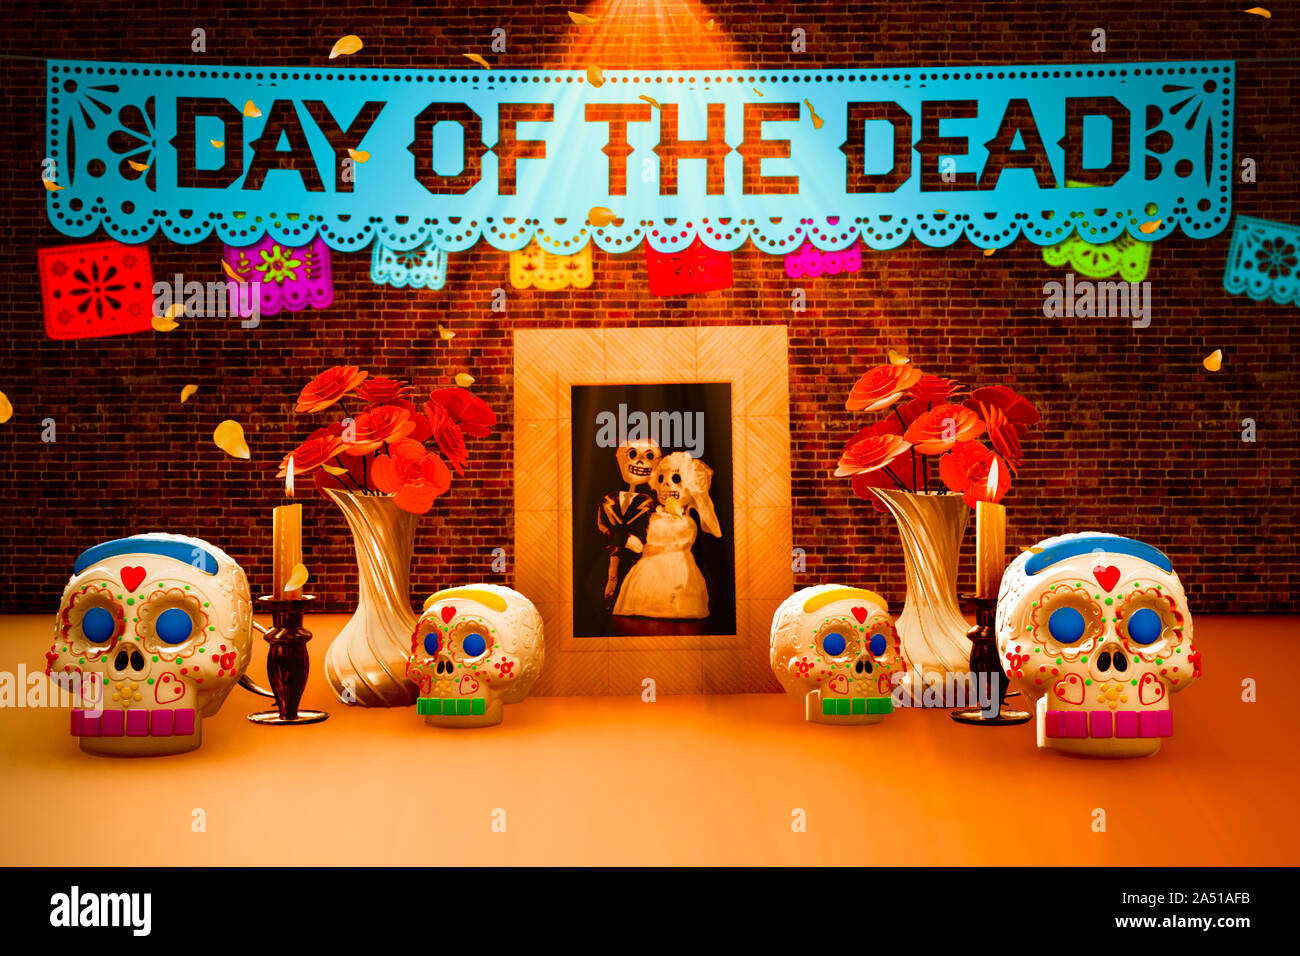 El día de los muertos, ofrenda mexicana con una imagen y letras en inglés  Fotografía de stock - Alamy